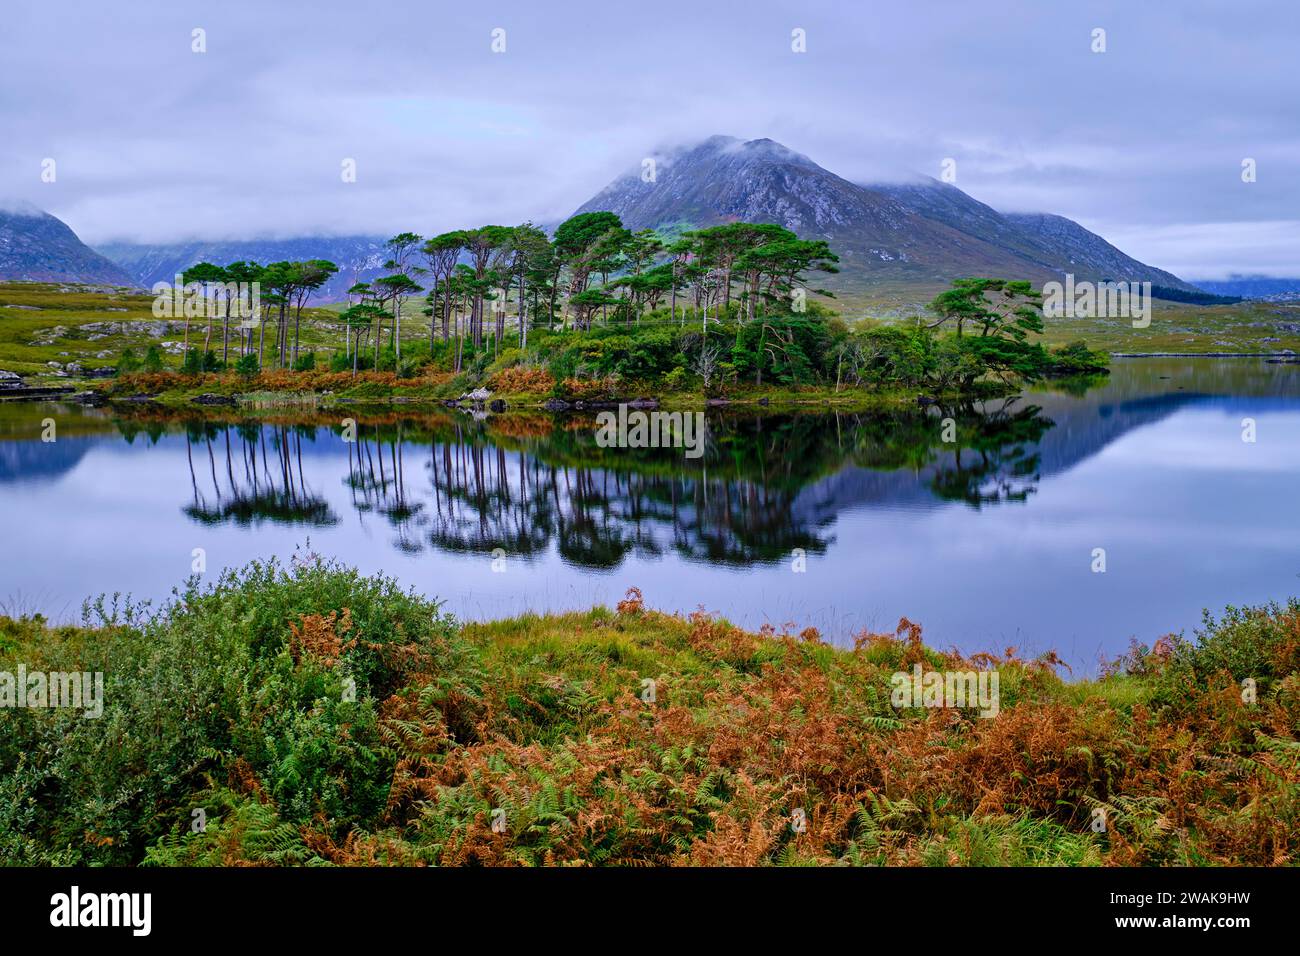 République d'Irlande, comté de Galway, parc national du Connemara, une île sur le lac Derryclare, Twelve Bens en arrière-plan Banque D'Images